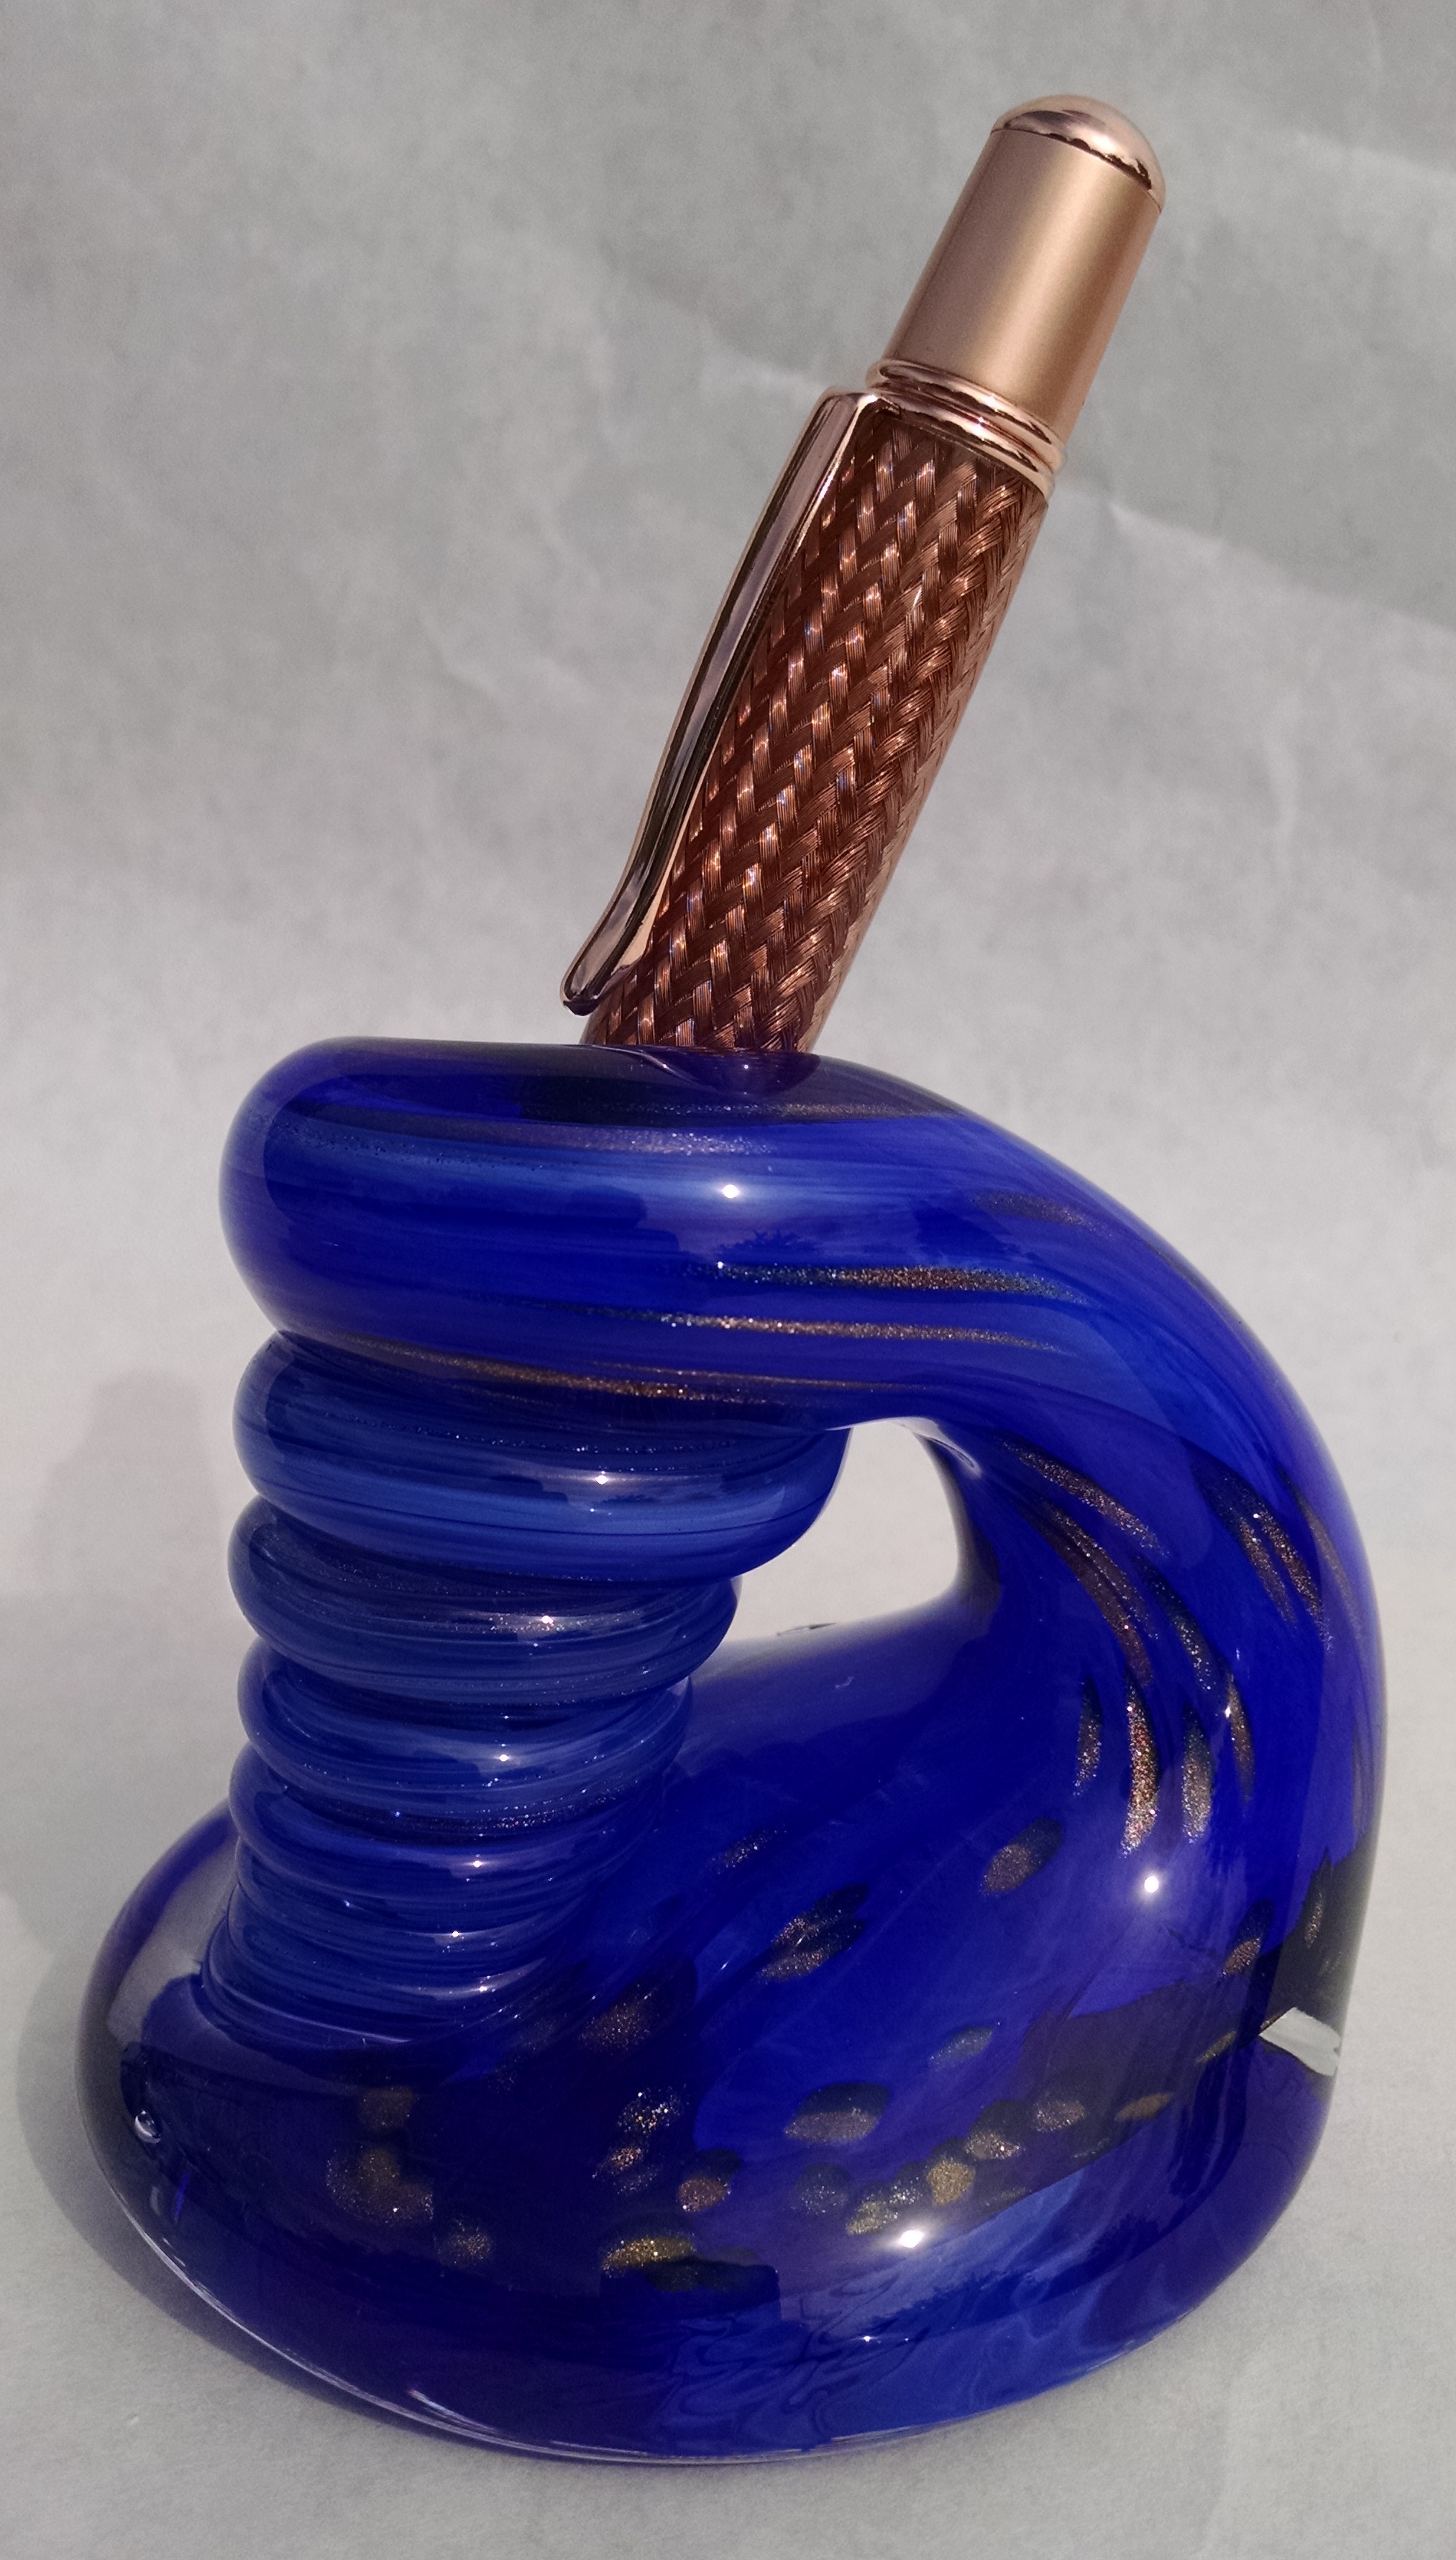 Blown glass pen holder, hand made blue